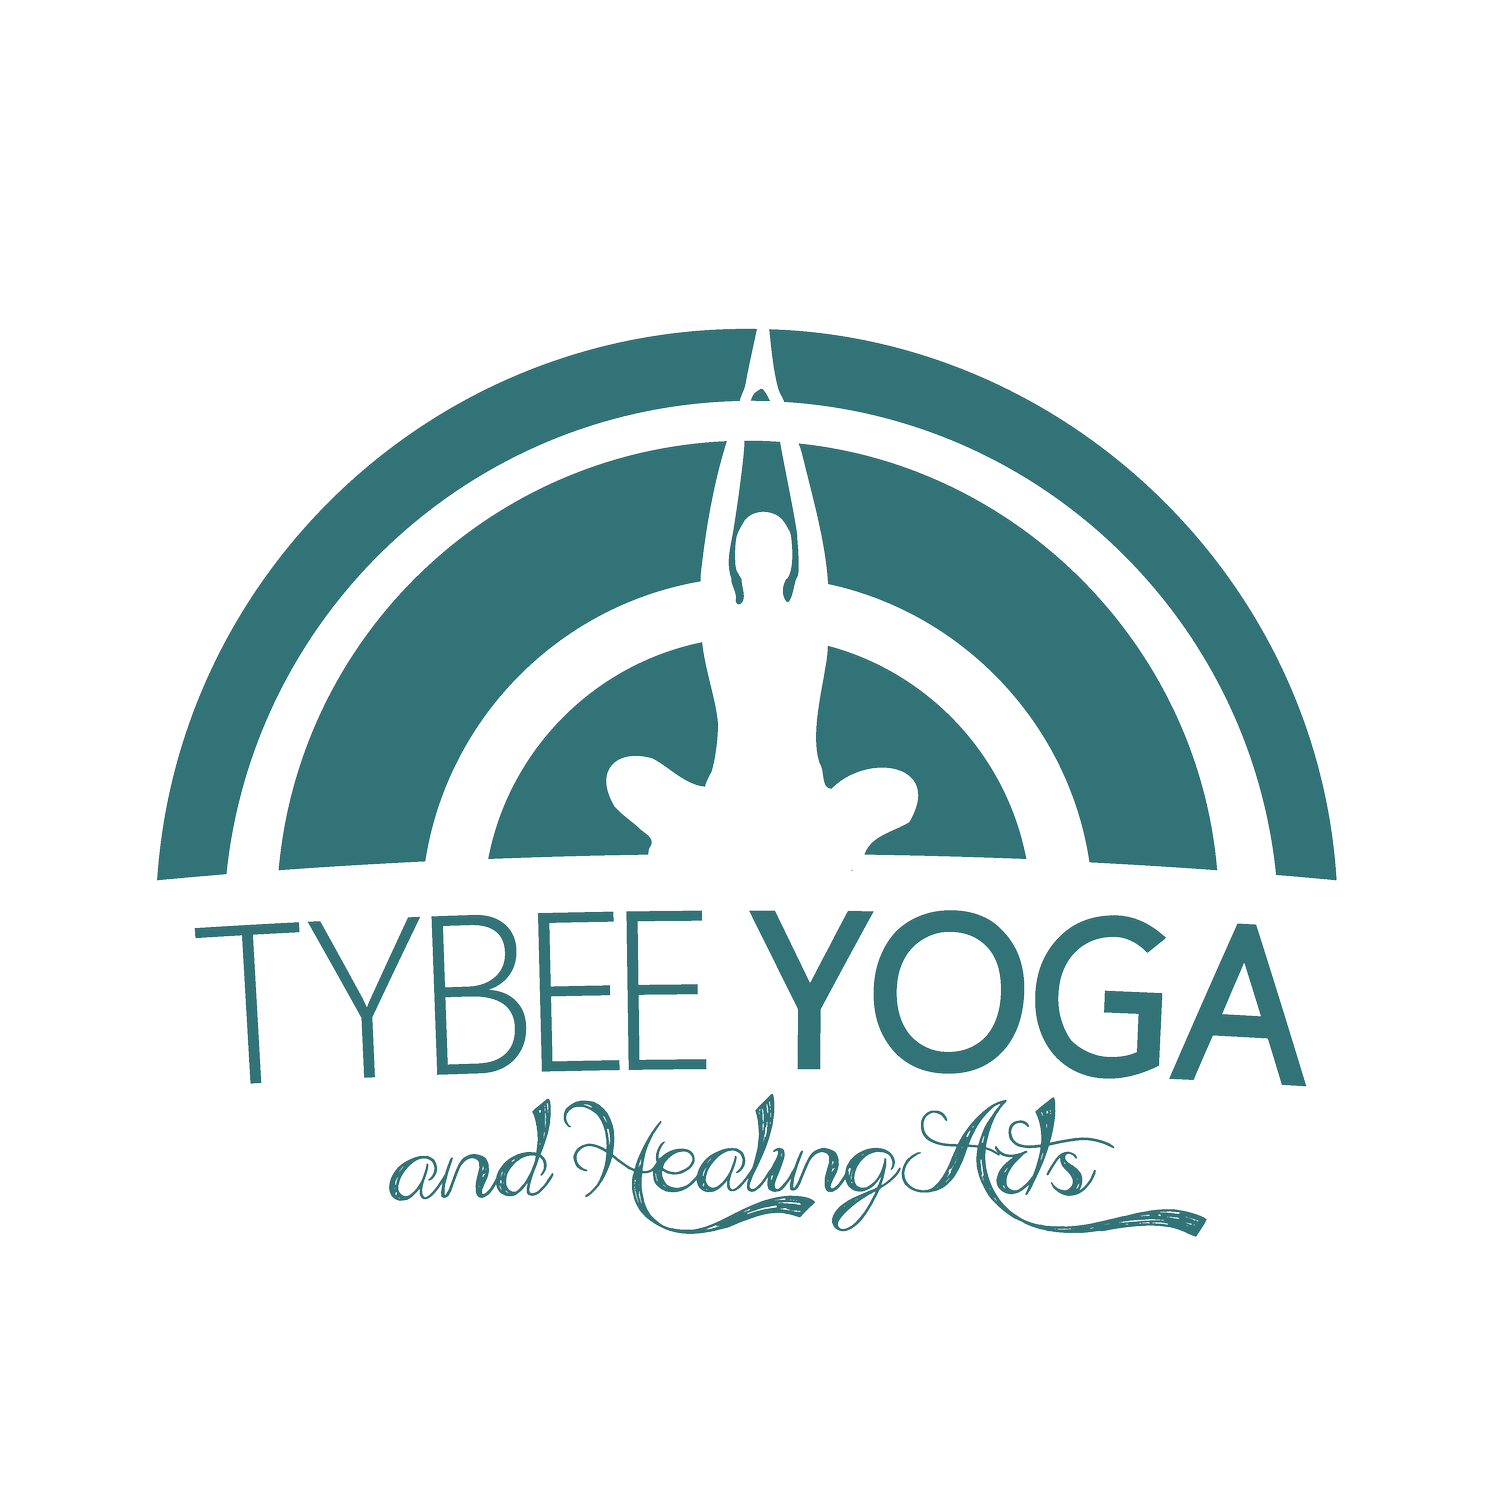 Tybee Yoga and Healing Arts